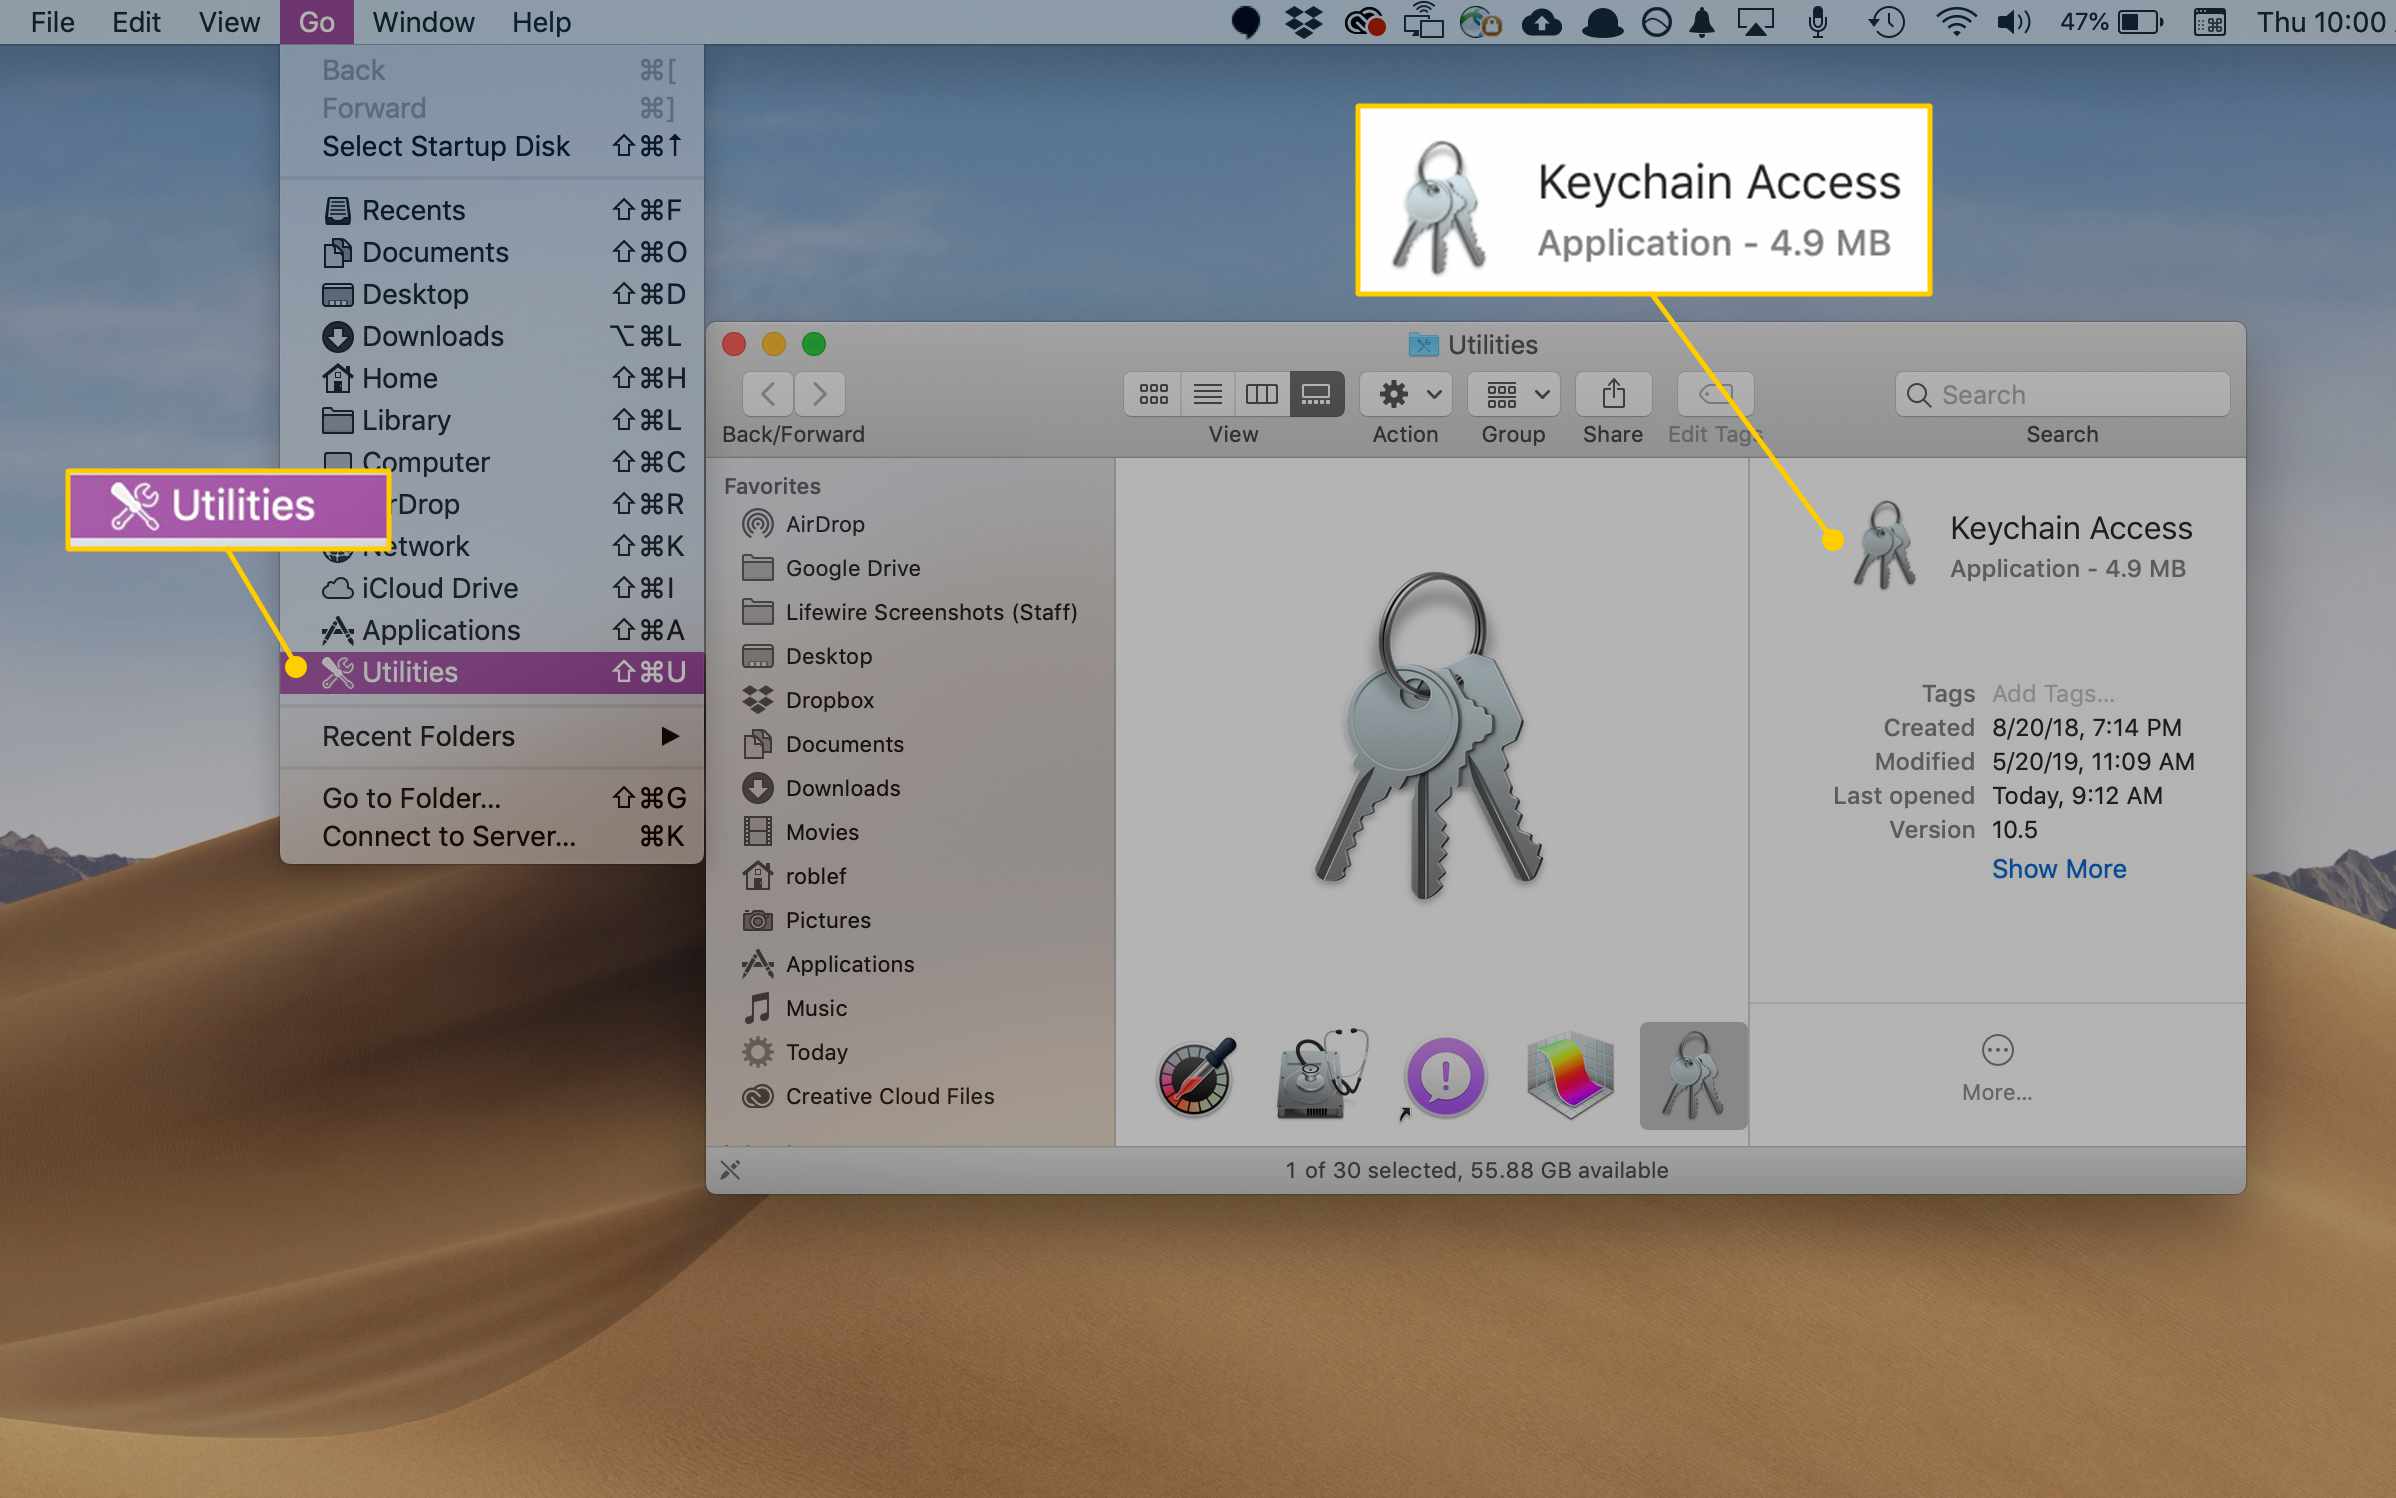 Verktygsmeny och Keychain Access -app i macOS